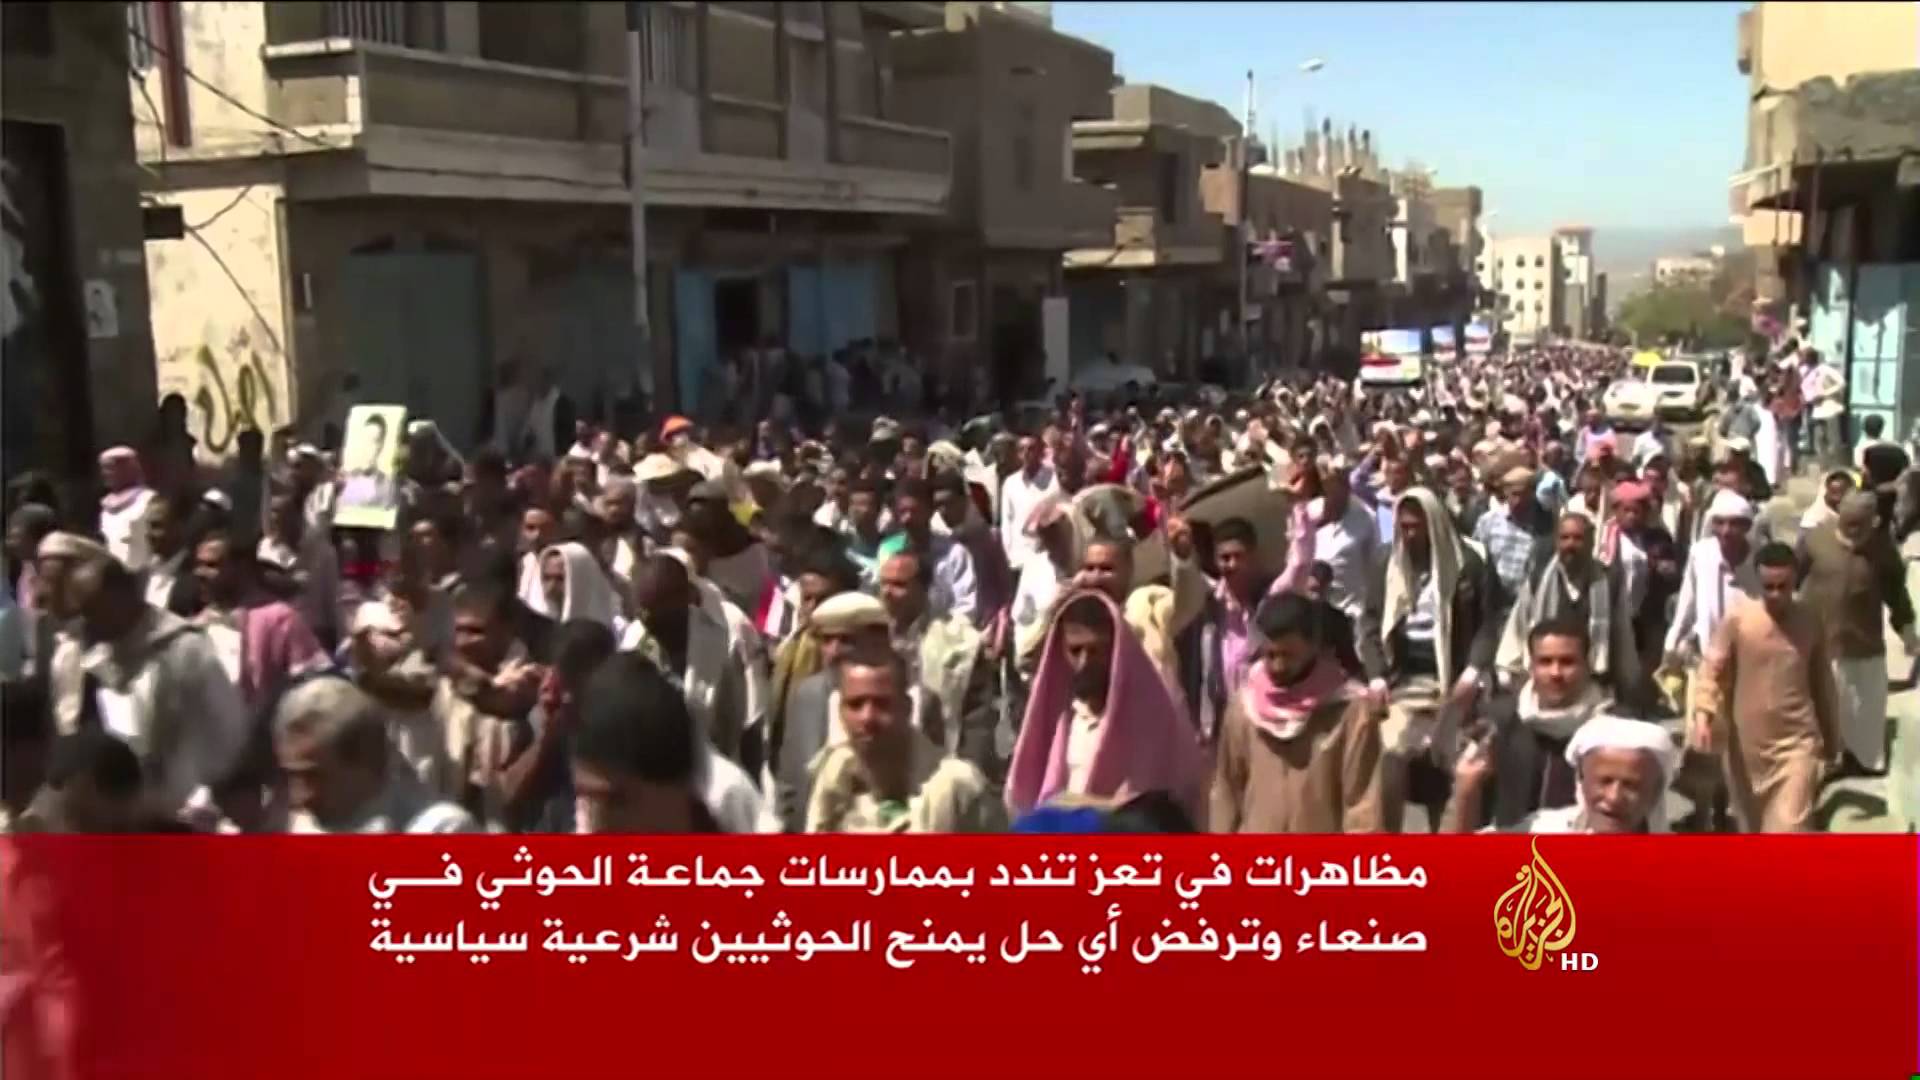 بيان لجماعة الحوثي : أهالي مدينة تعز مرتبطون بالمشاريع الاجرامية والتكفيرية